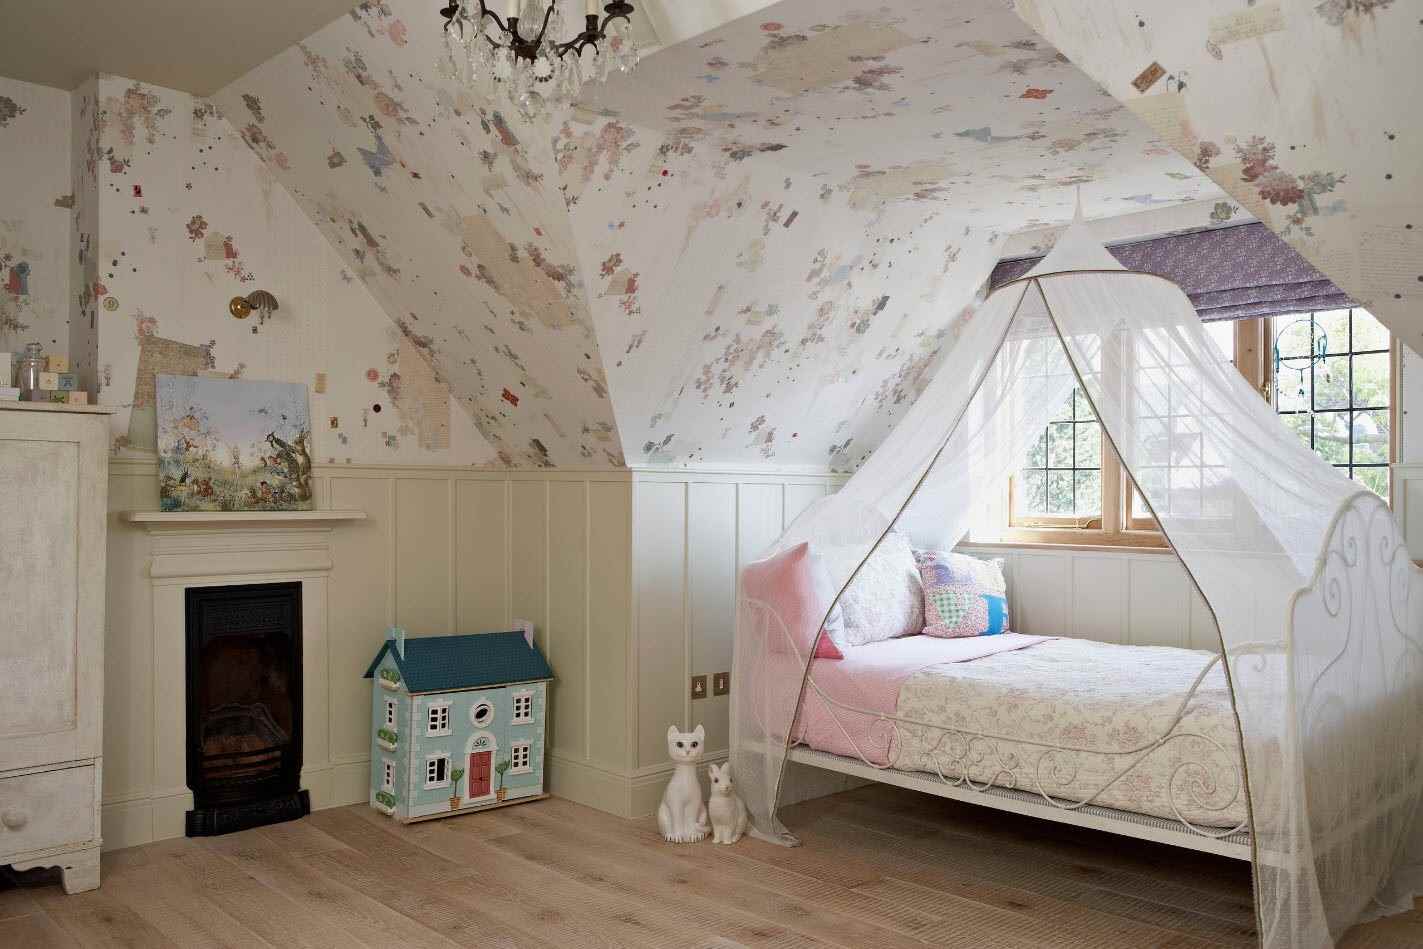 Un esempio di un bellissimo design di una camera per bambini per una ragazza